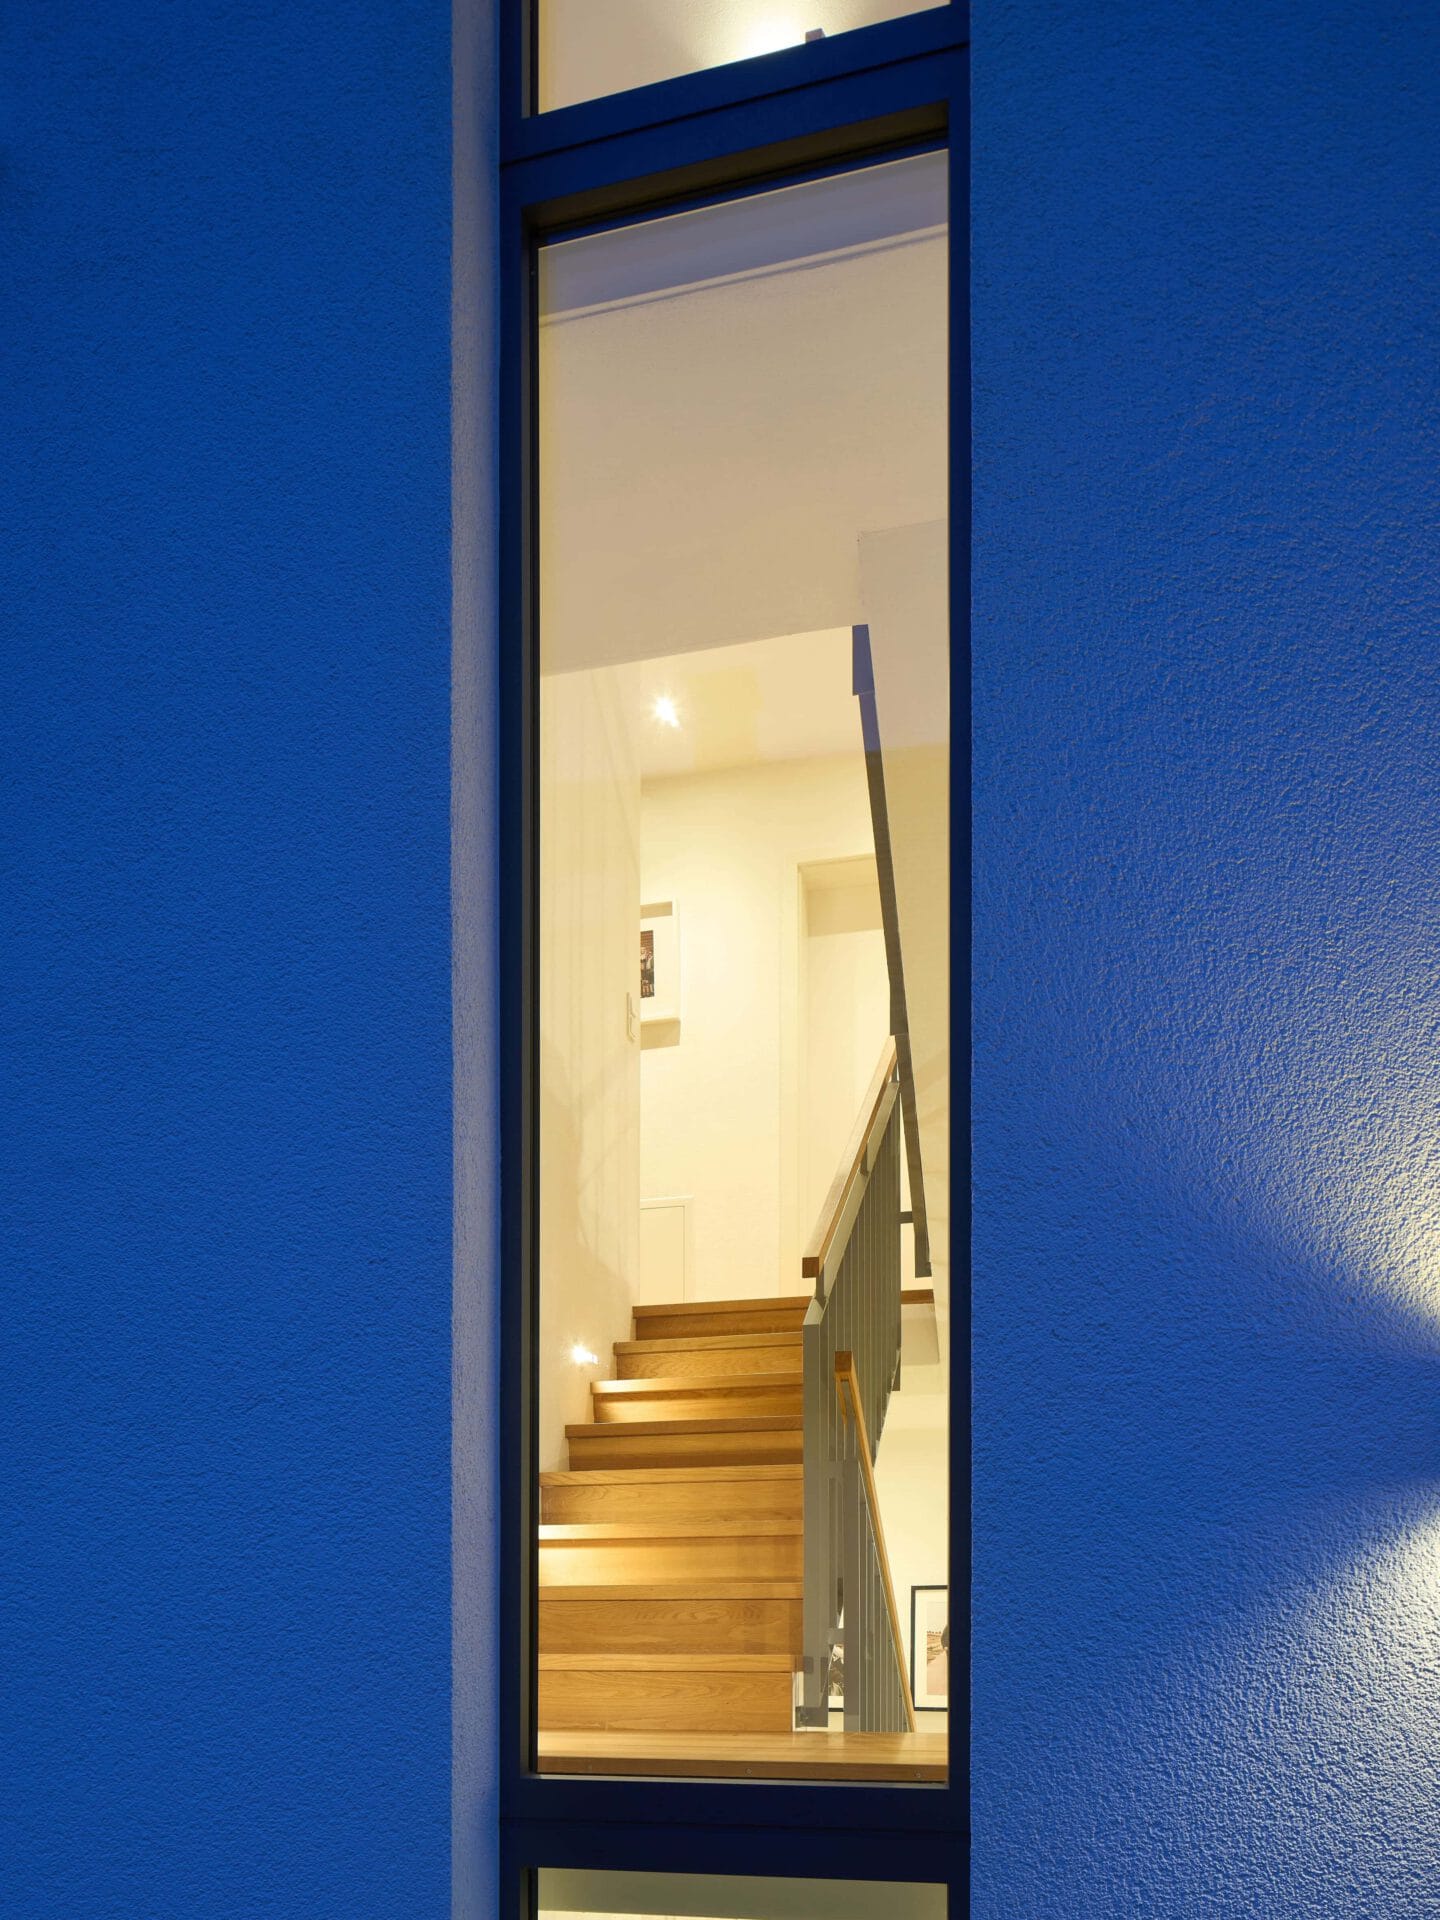 Blick durchs Fenster ins Treppenhaus eines Doppelhauses auf eine Holztreppe